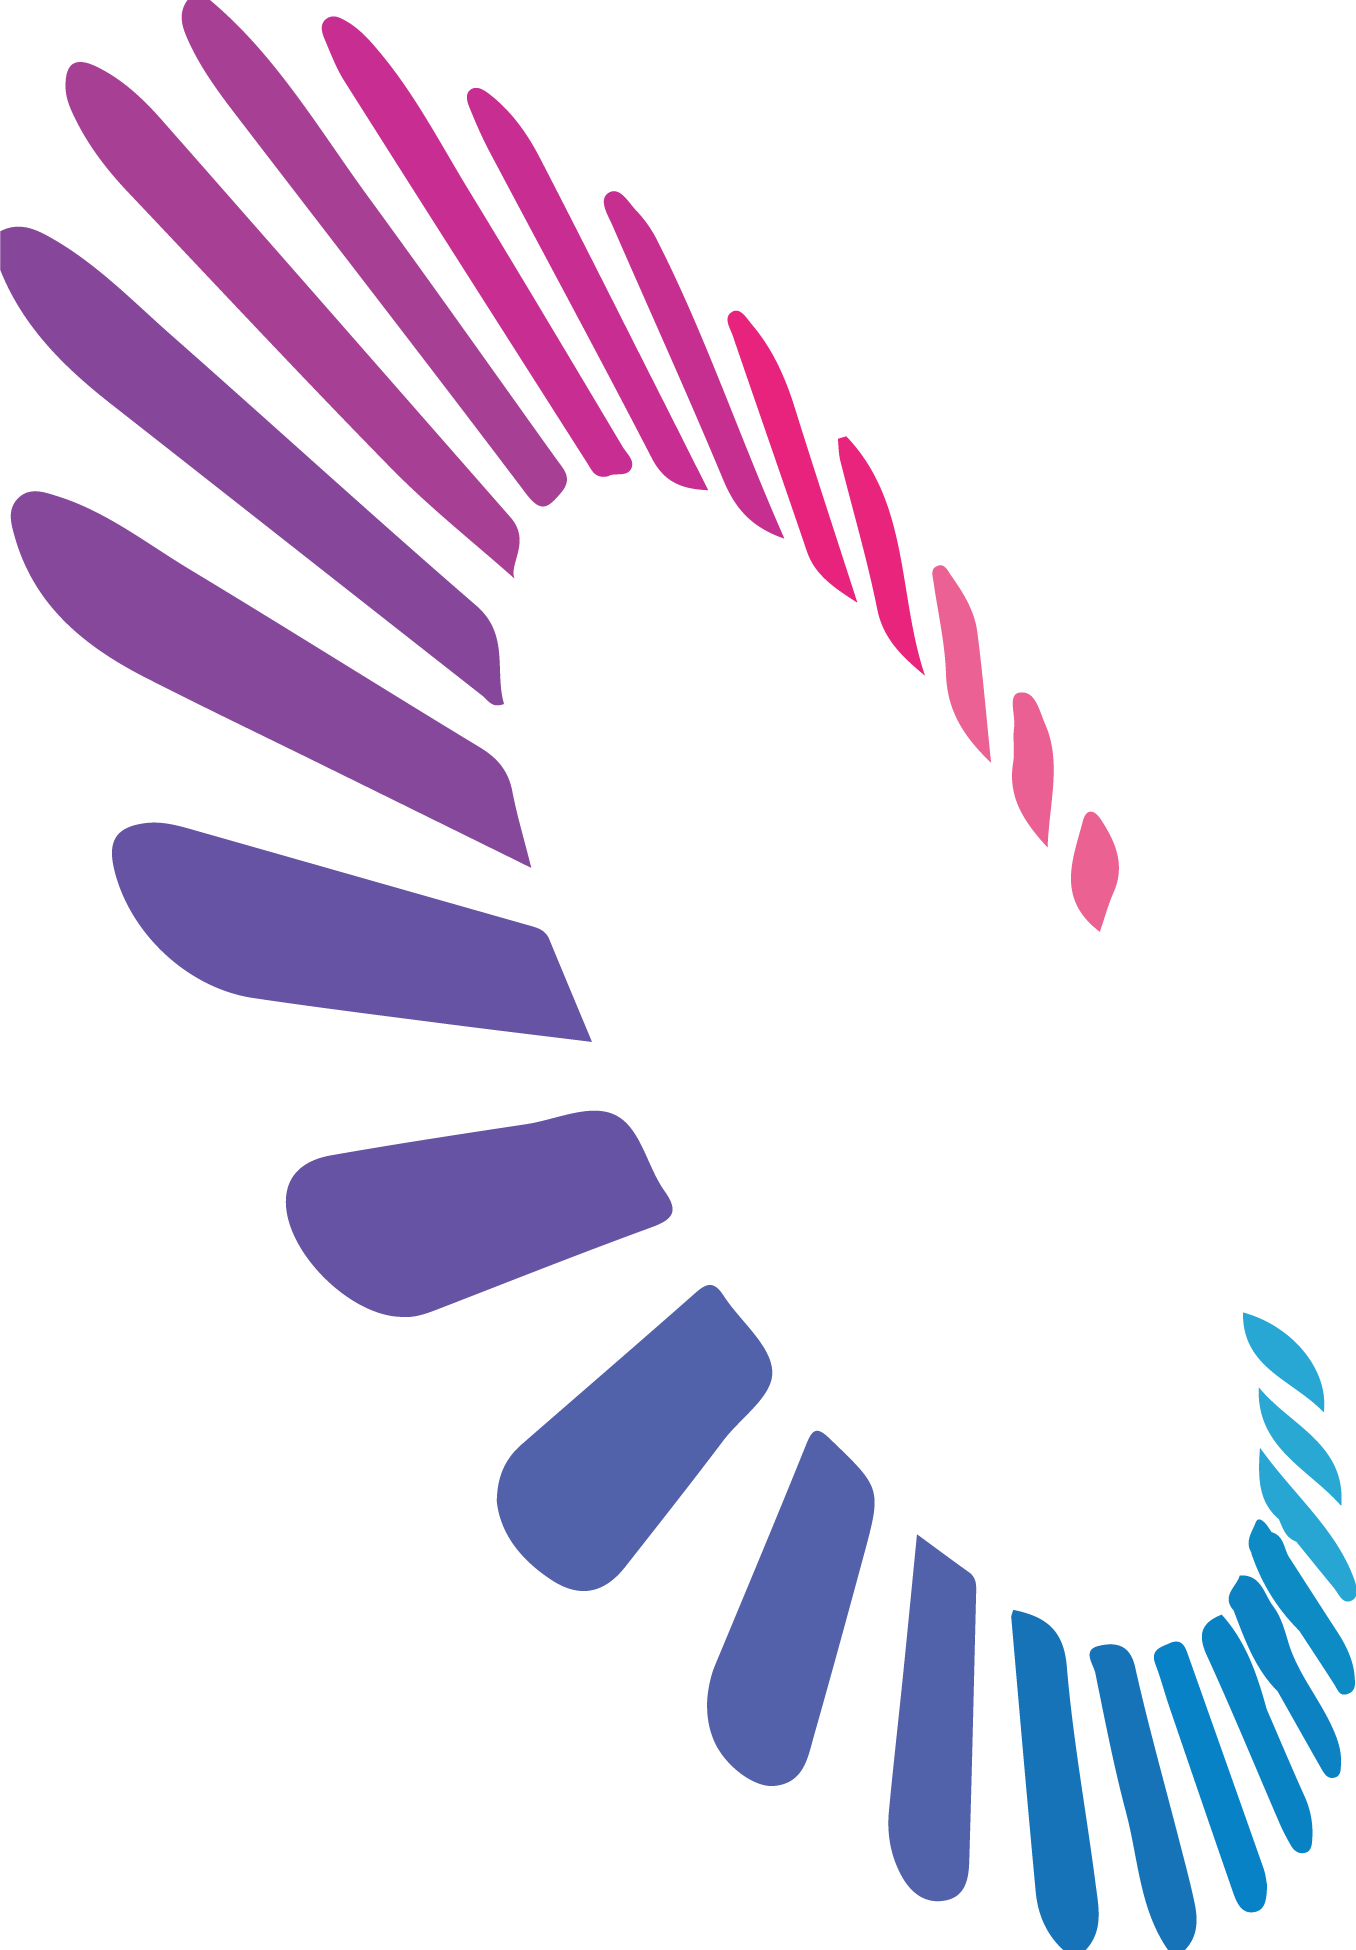 Cerecor logo (transparent PNG)